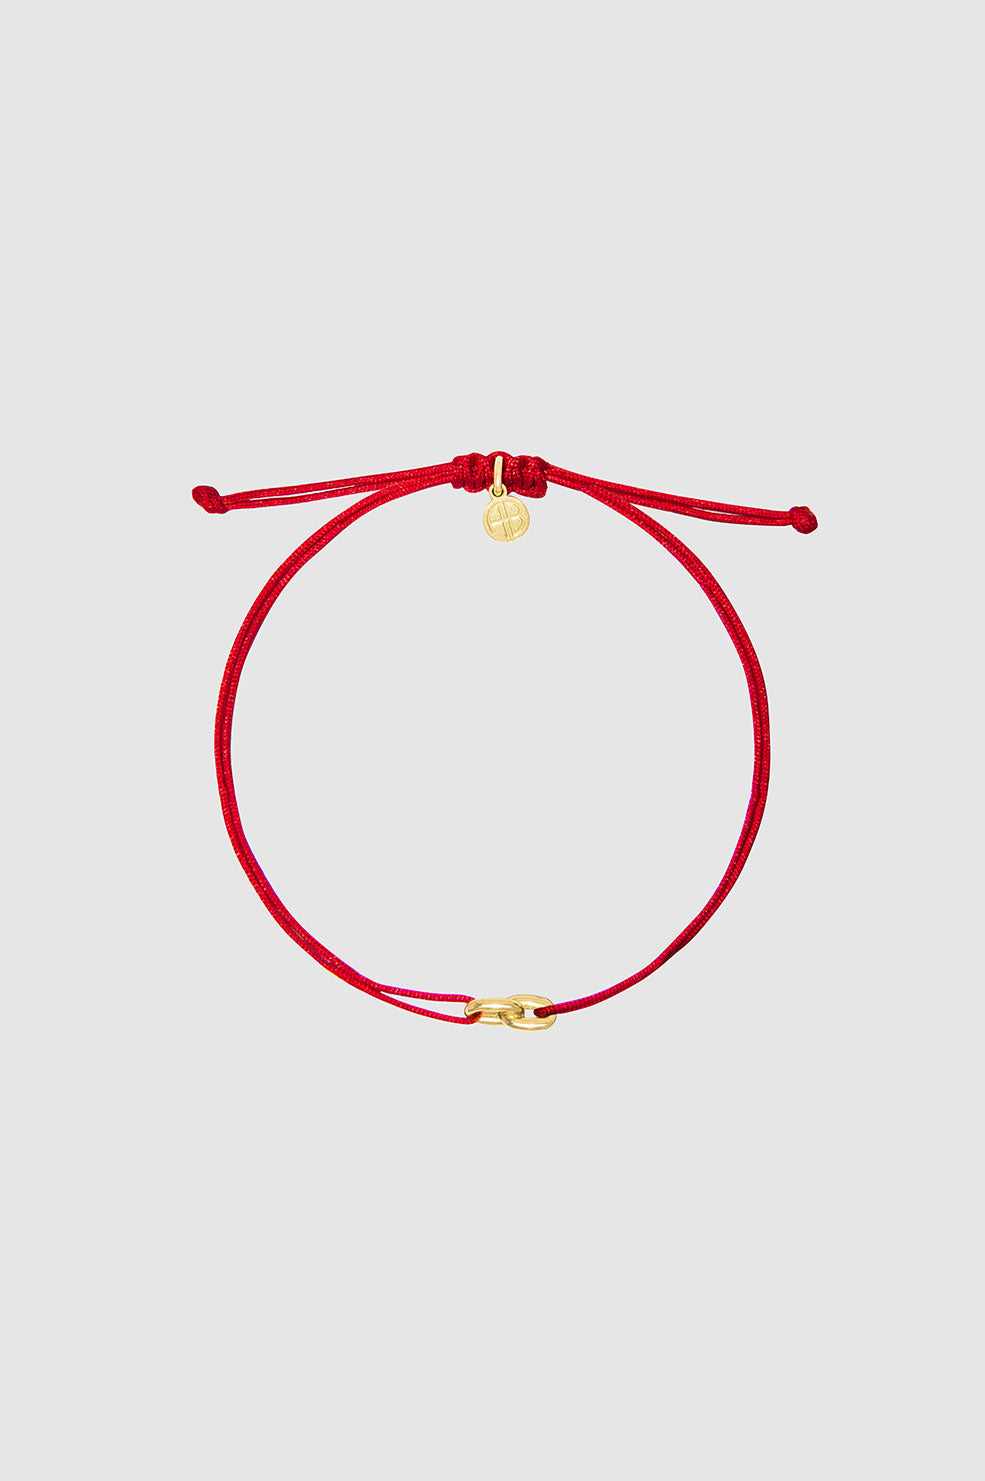 String Link Bracelet - 14k Gold And Red